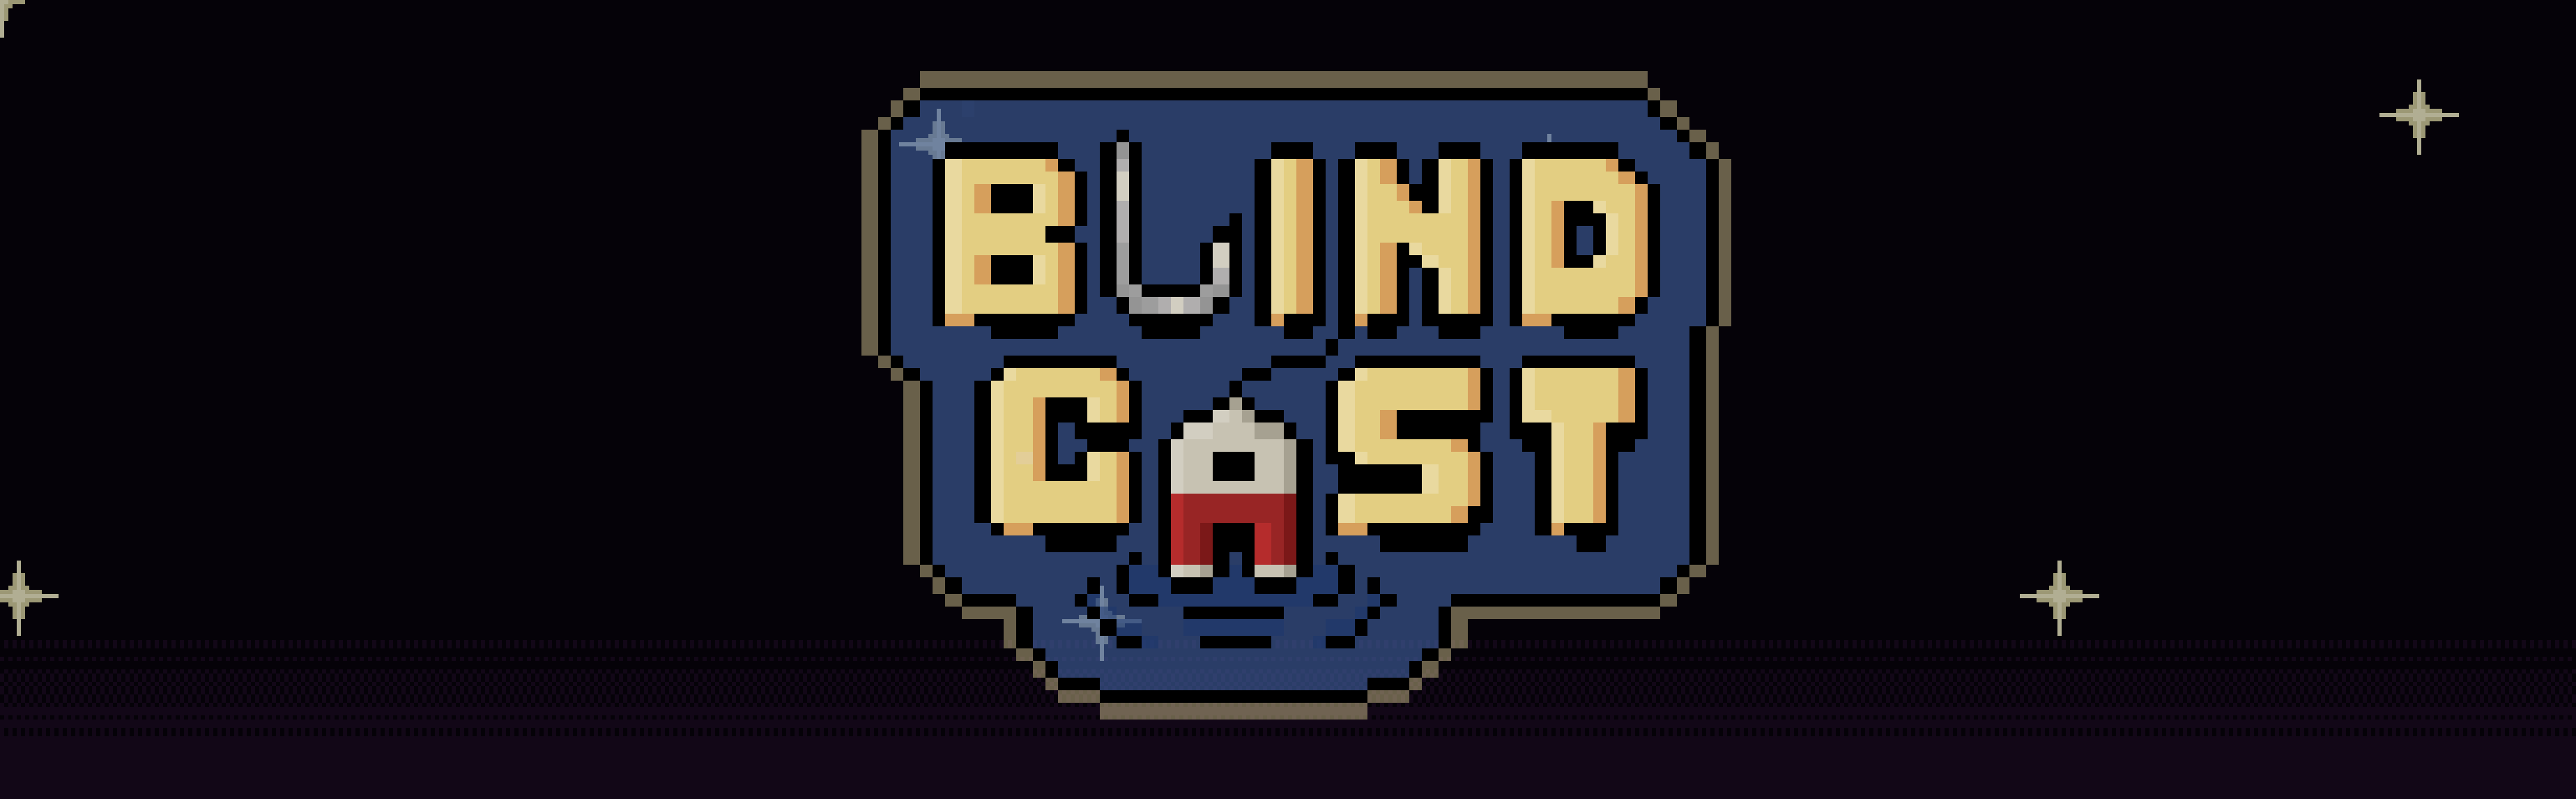 Blindcast